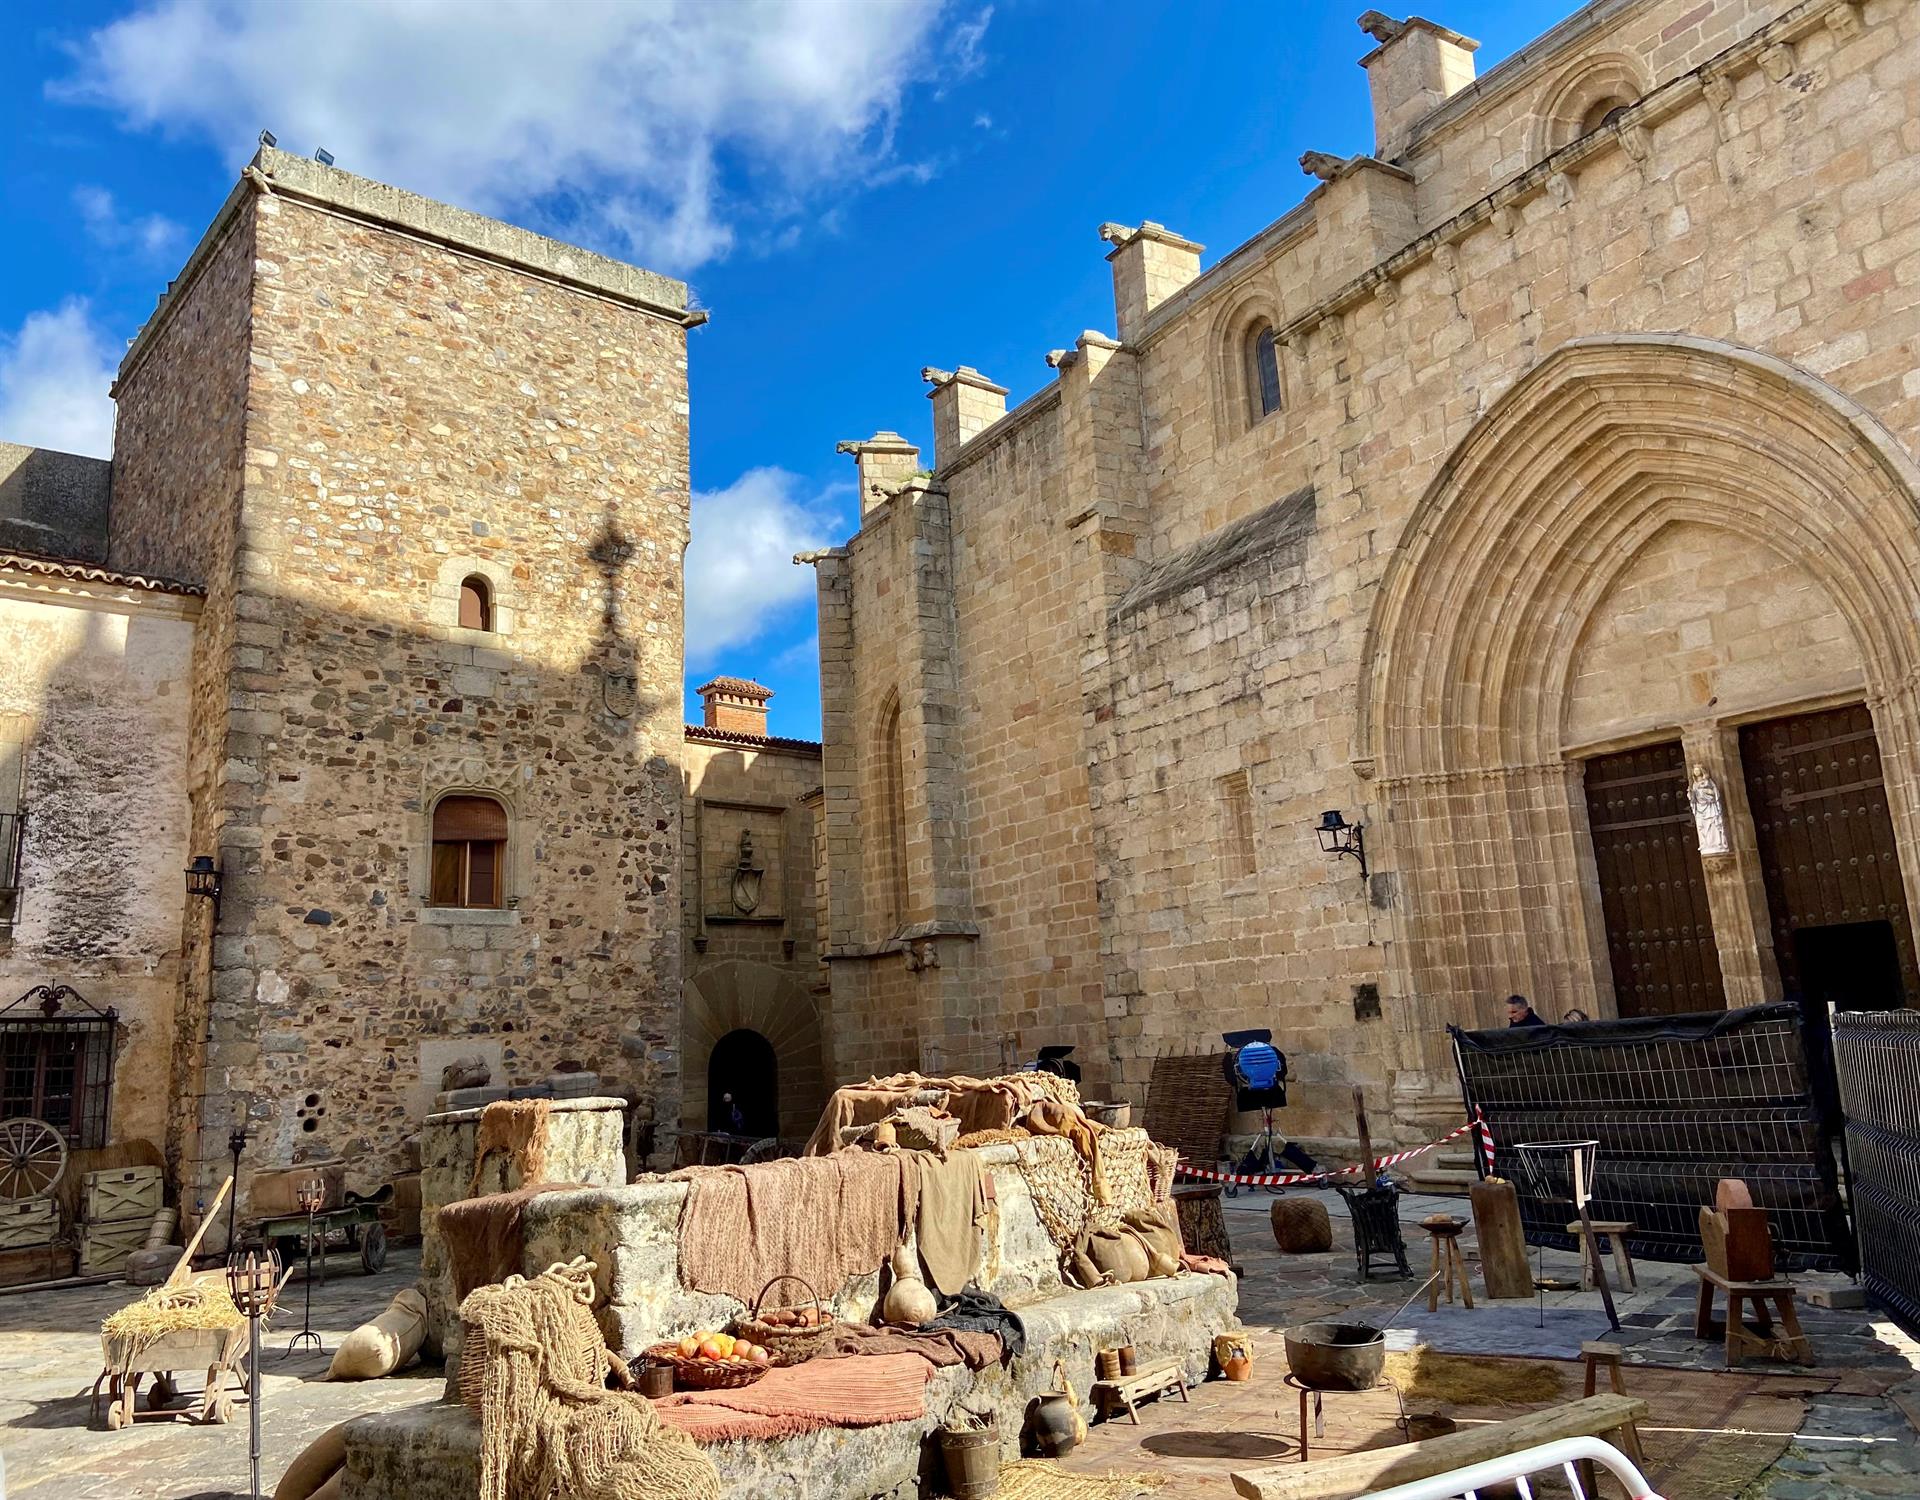 Vista general de la plaza de Santa María, en Cáceres, donde se han rodado las últimas escenas de la precuela de la serie "Juego de Tronos". EFE/ Eduardo Villanueva